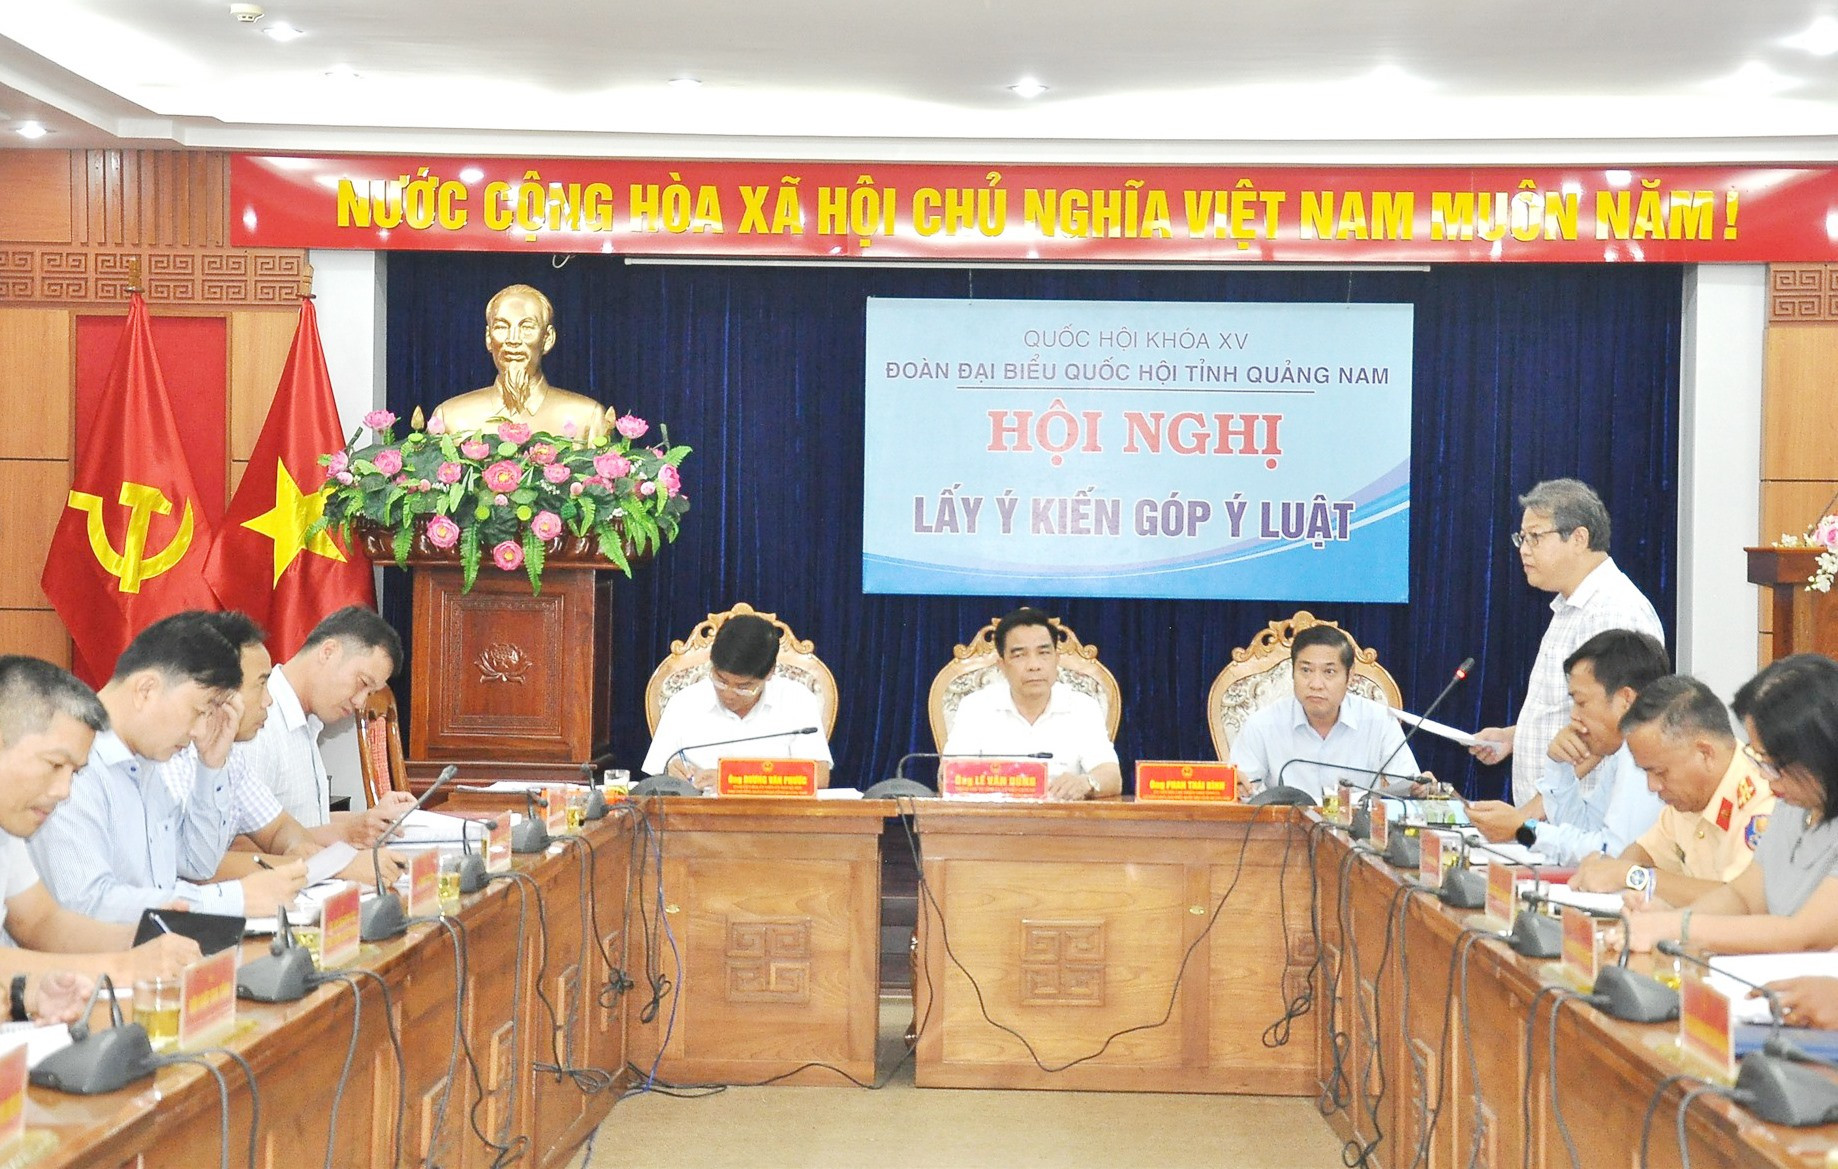 Quang cảnh hội nghị lấy ý kiến góp ý dự thảo Luật Đường bộ do Đoàn đại biểu Quốc hội tỉnh Quảng Nam tổ chức vào chiều ngày 4/10.Ảnh: TÂM ĐAN